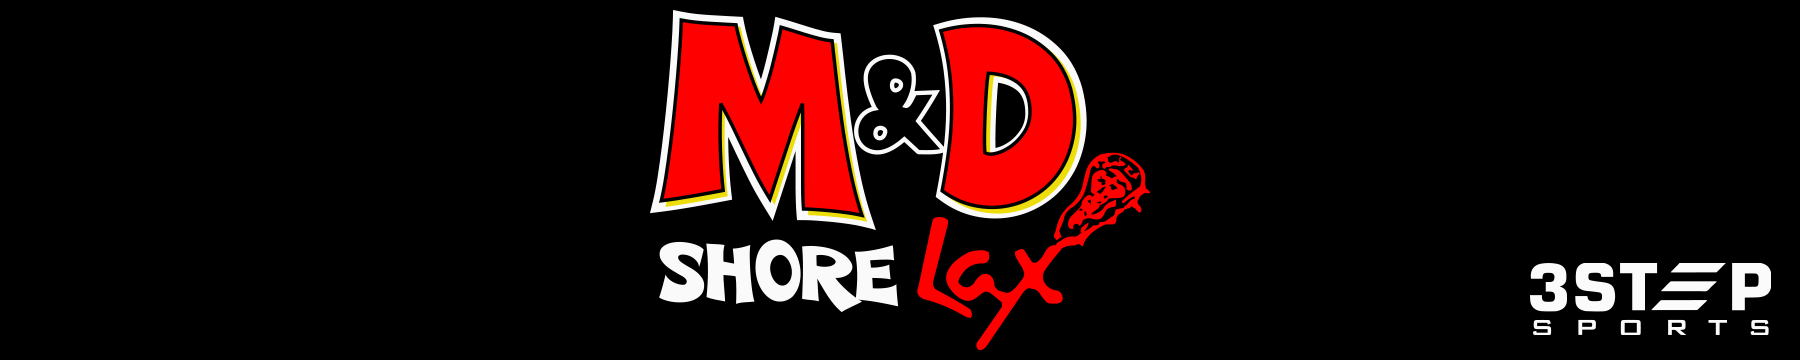 M&D Shore